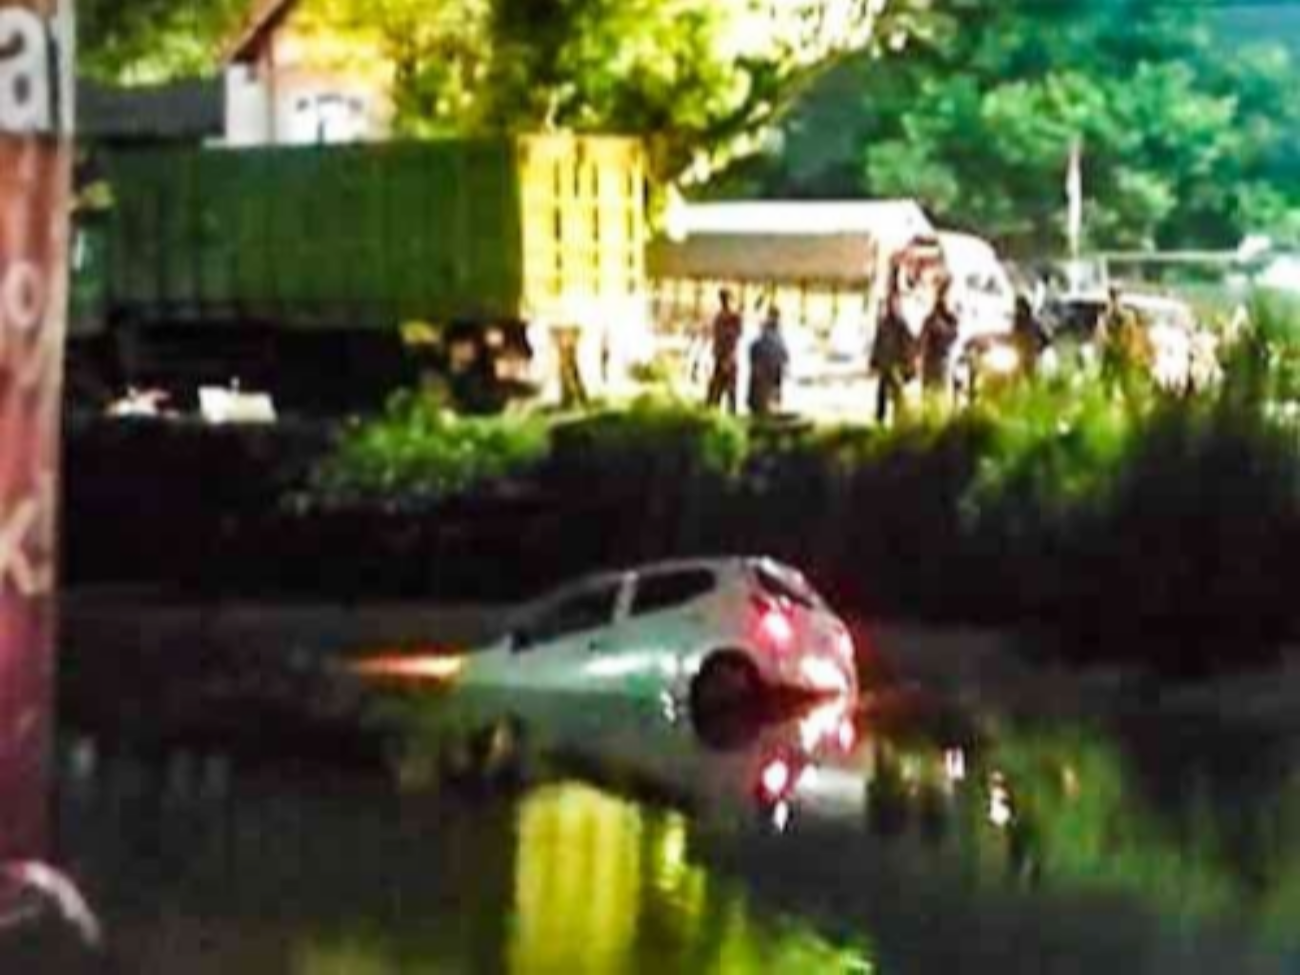 Mobil Daihatsu Ayla terjun ke sungai di Sidoarjo, Jawa Timur setelah diserempet truk yang tidak diketahui nopolnya. (Foto: Istimewa)